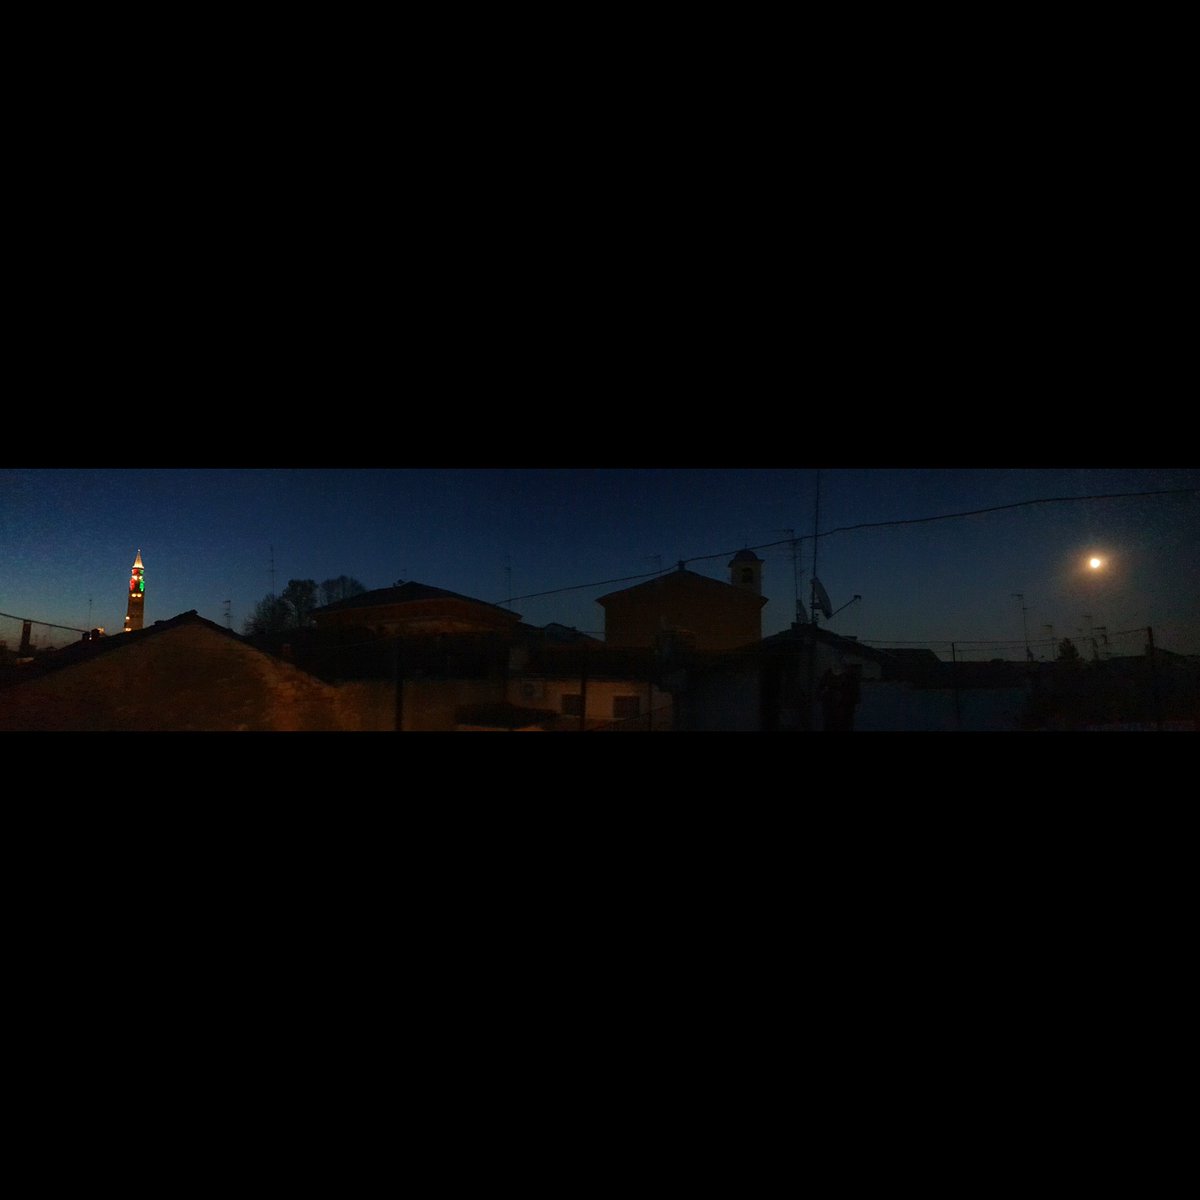 #italy #igersitalia #igersitaly #yallersitalia #photooftheday #picoftheday #colours #mood #instagram #instacremona #igersworld #igerslombardia ##igerseurope #sunset #italia #lombardia #moon #Torrazzo #cremona #photography #photo